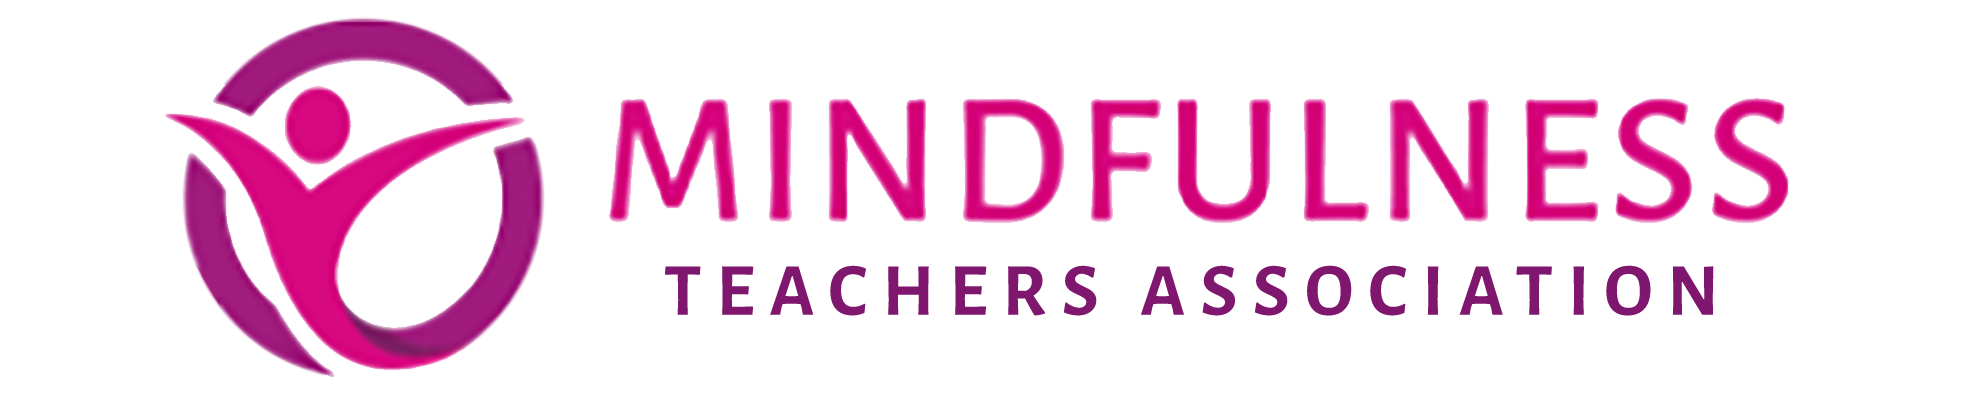 Mindfulness Teachers Association